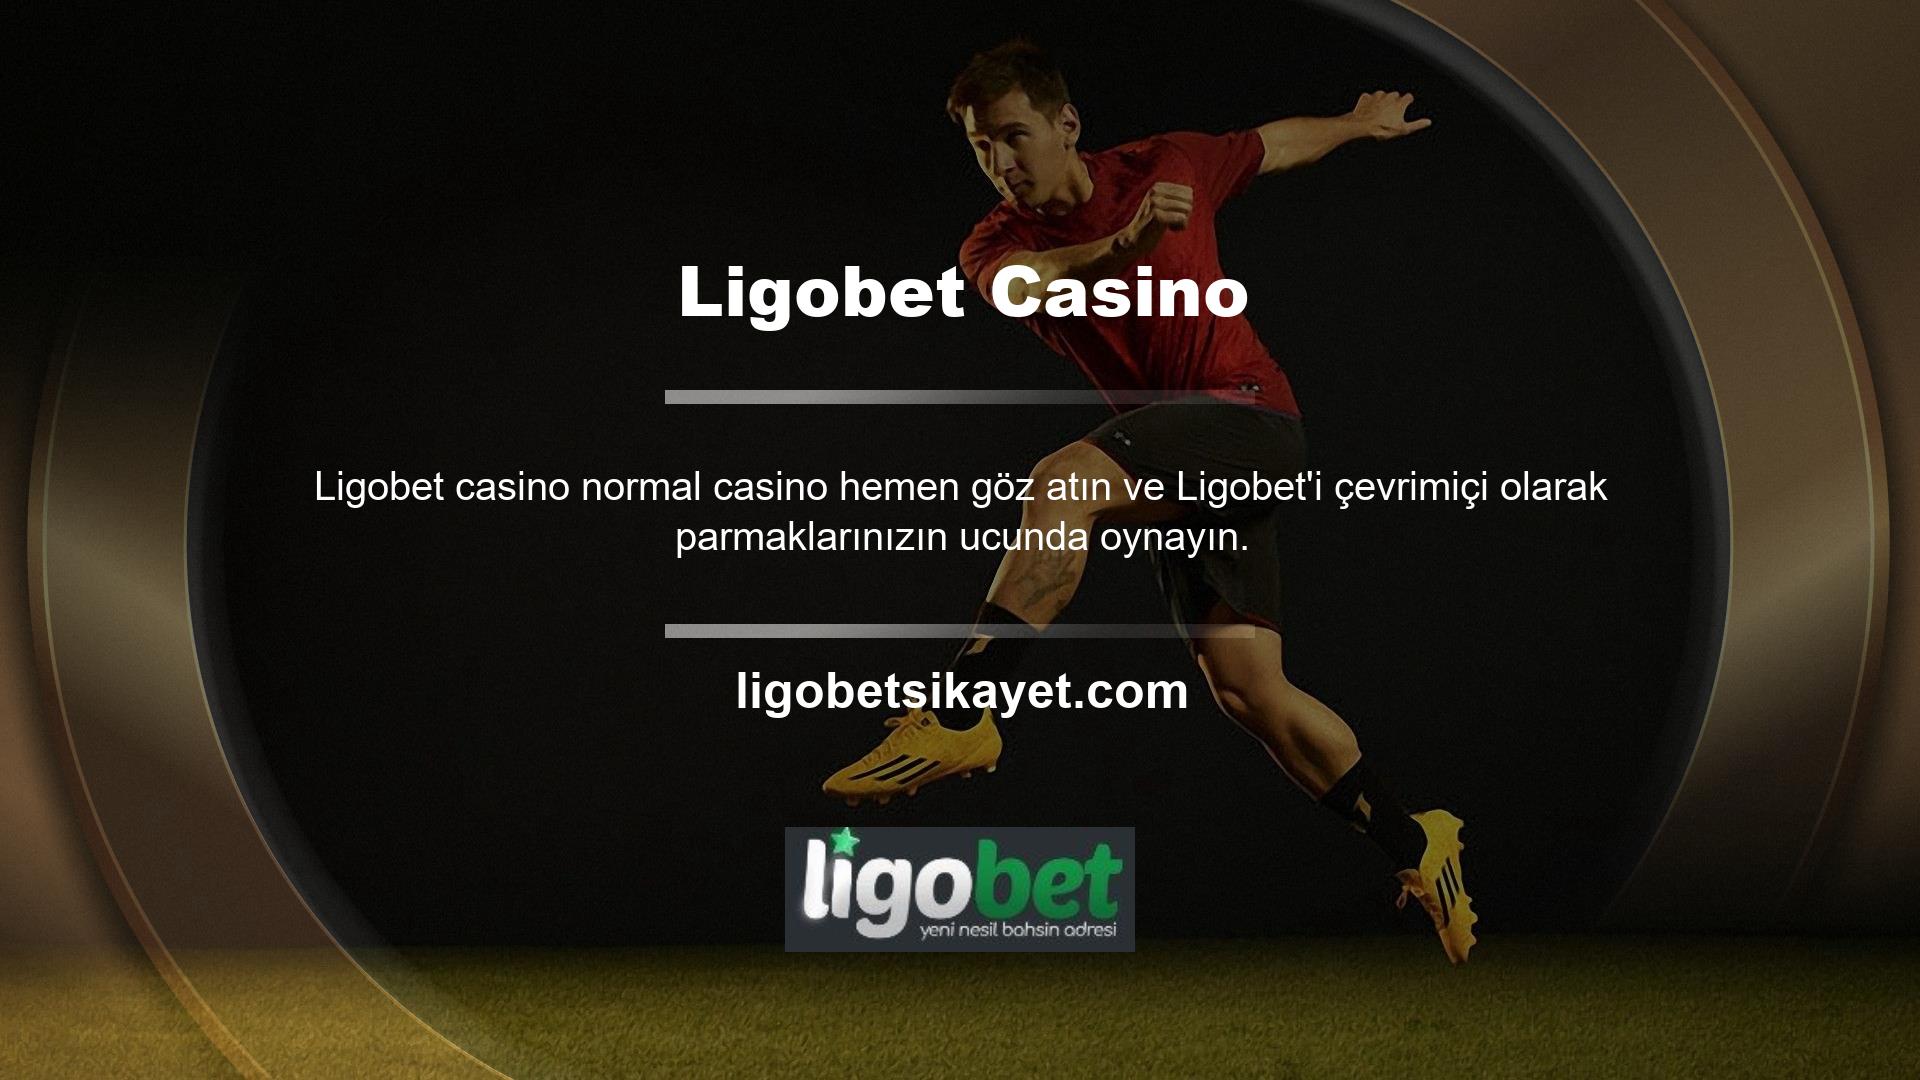 Ligobet web sitesi, gerçek bir casinoyi simüle etmek ve nostaljik bir atmosfer yaratmak için oyun tasarımına büyük özen göstermiştir